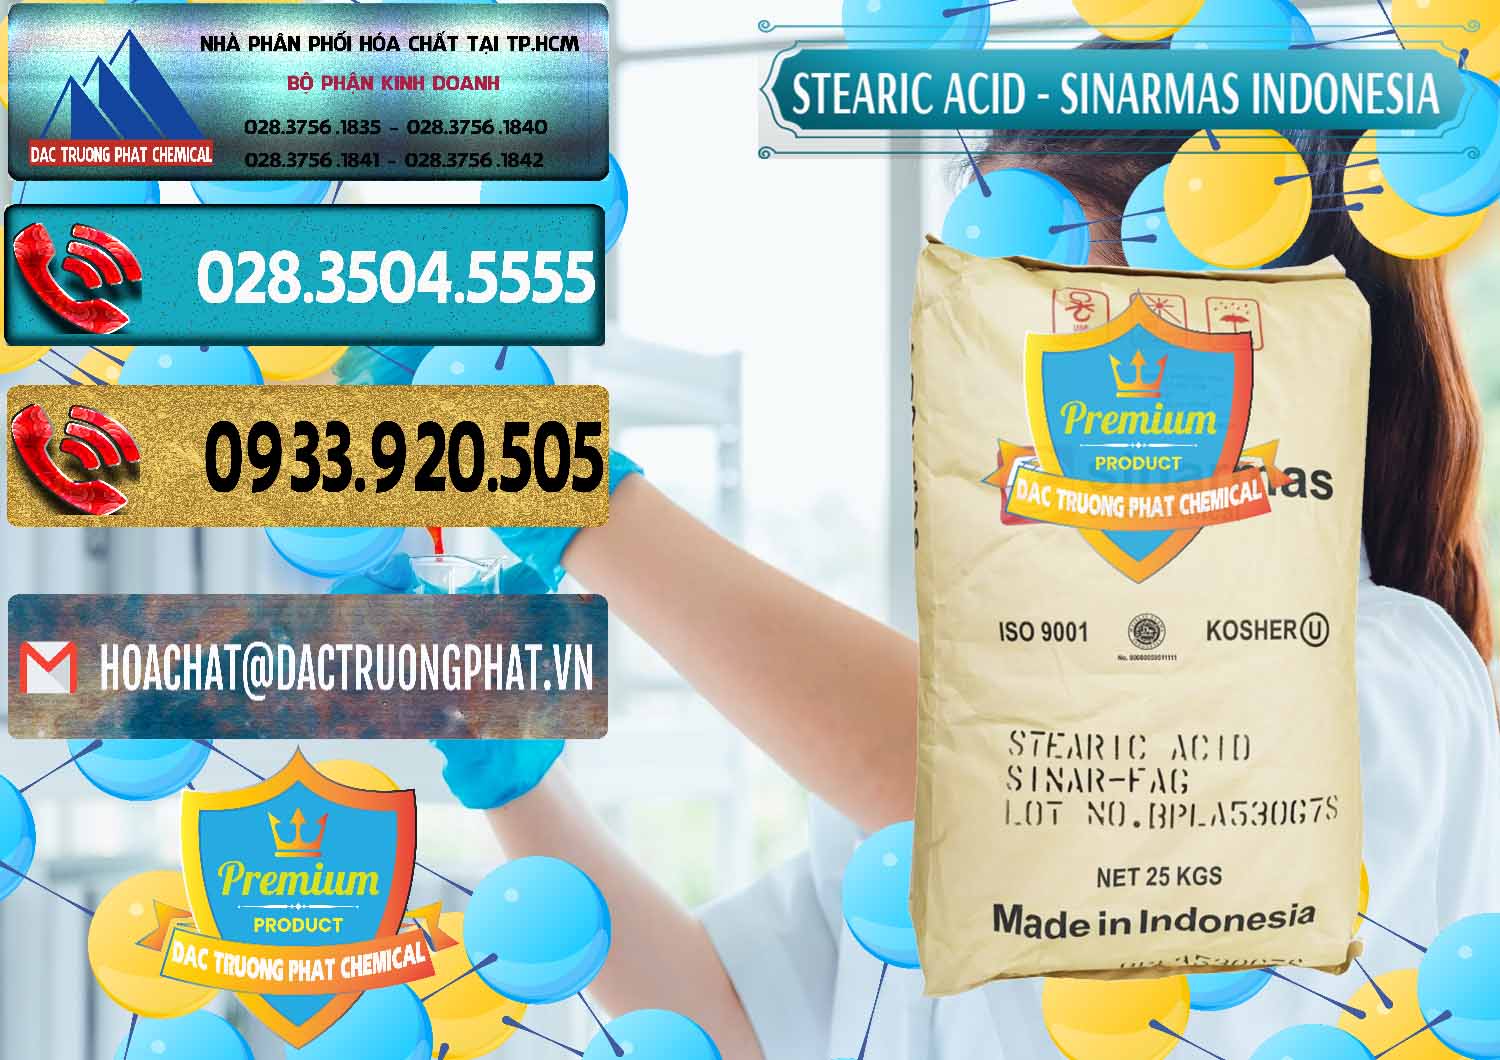 Chuyên bán ( cung cấp ) Axit Stearic - Stearic Acid Sinarmas Indonesia - 0389 - Cty nhập khẩu và phân phối hóa chất tại TP.HCM - hoachatdetnhuom.com